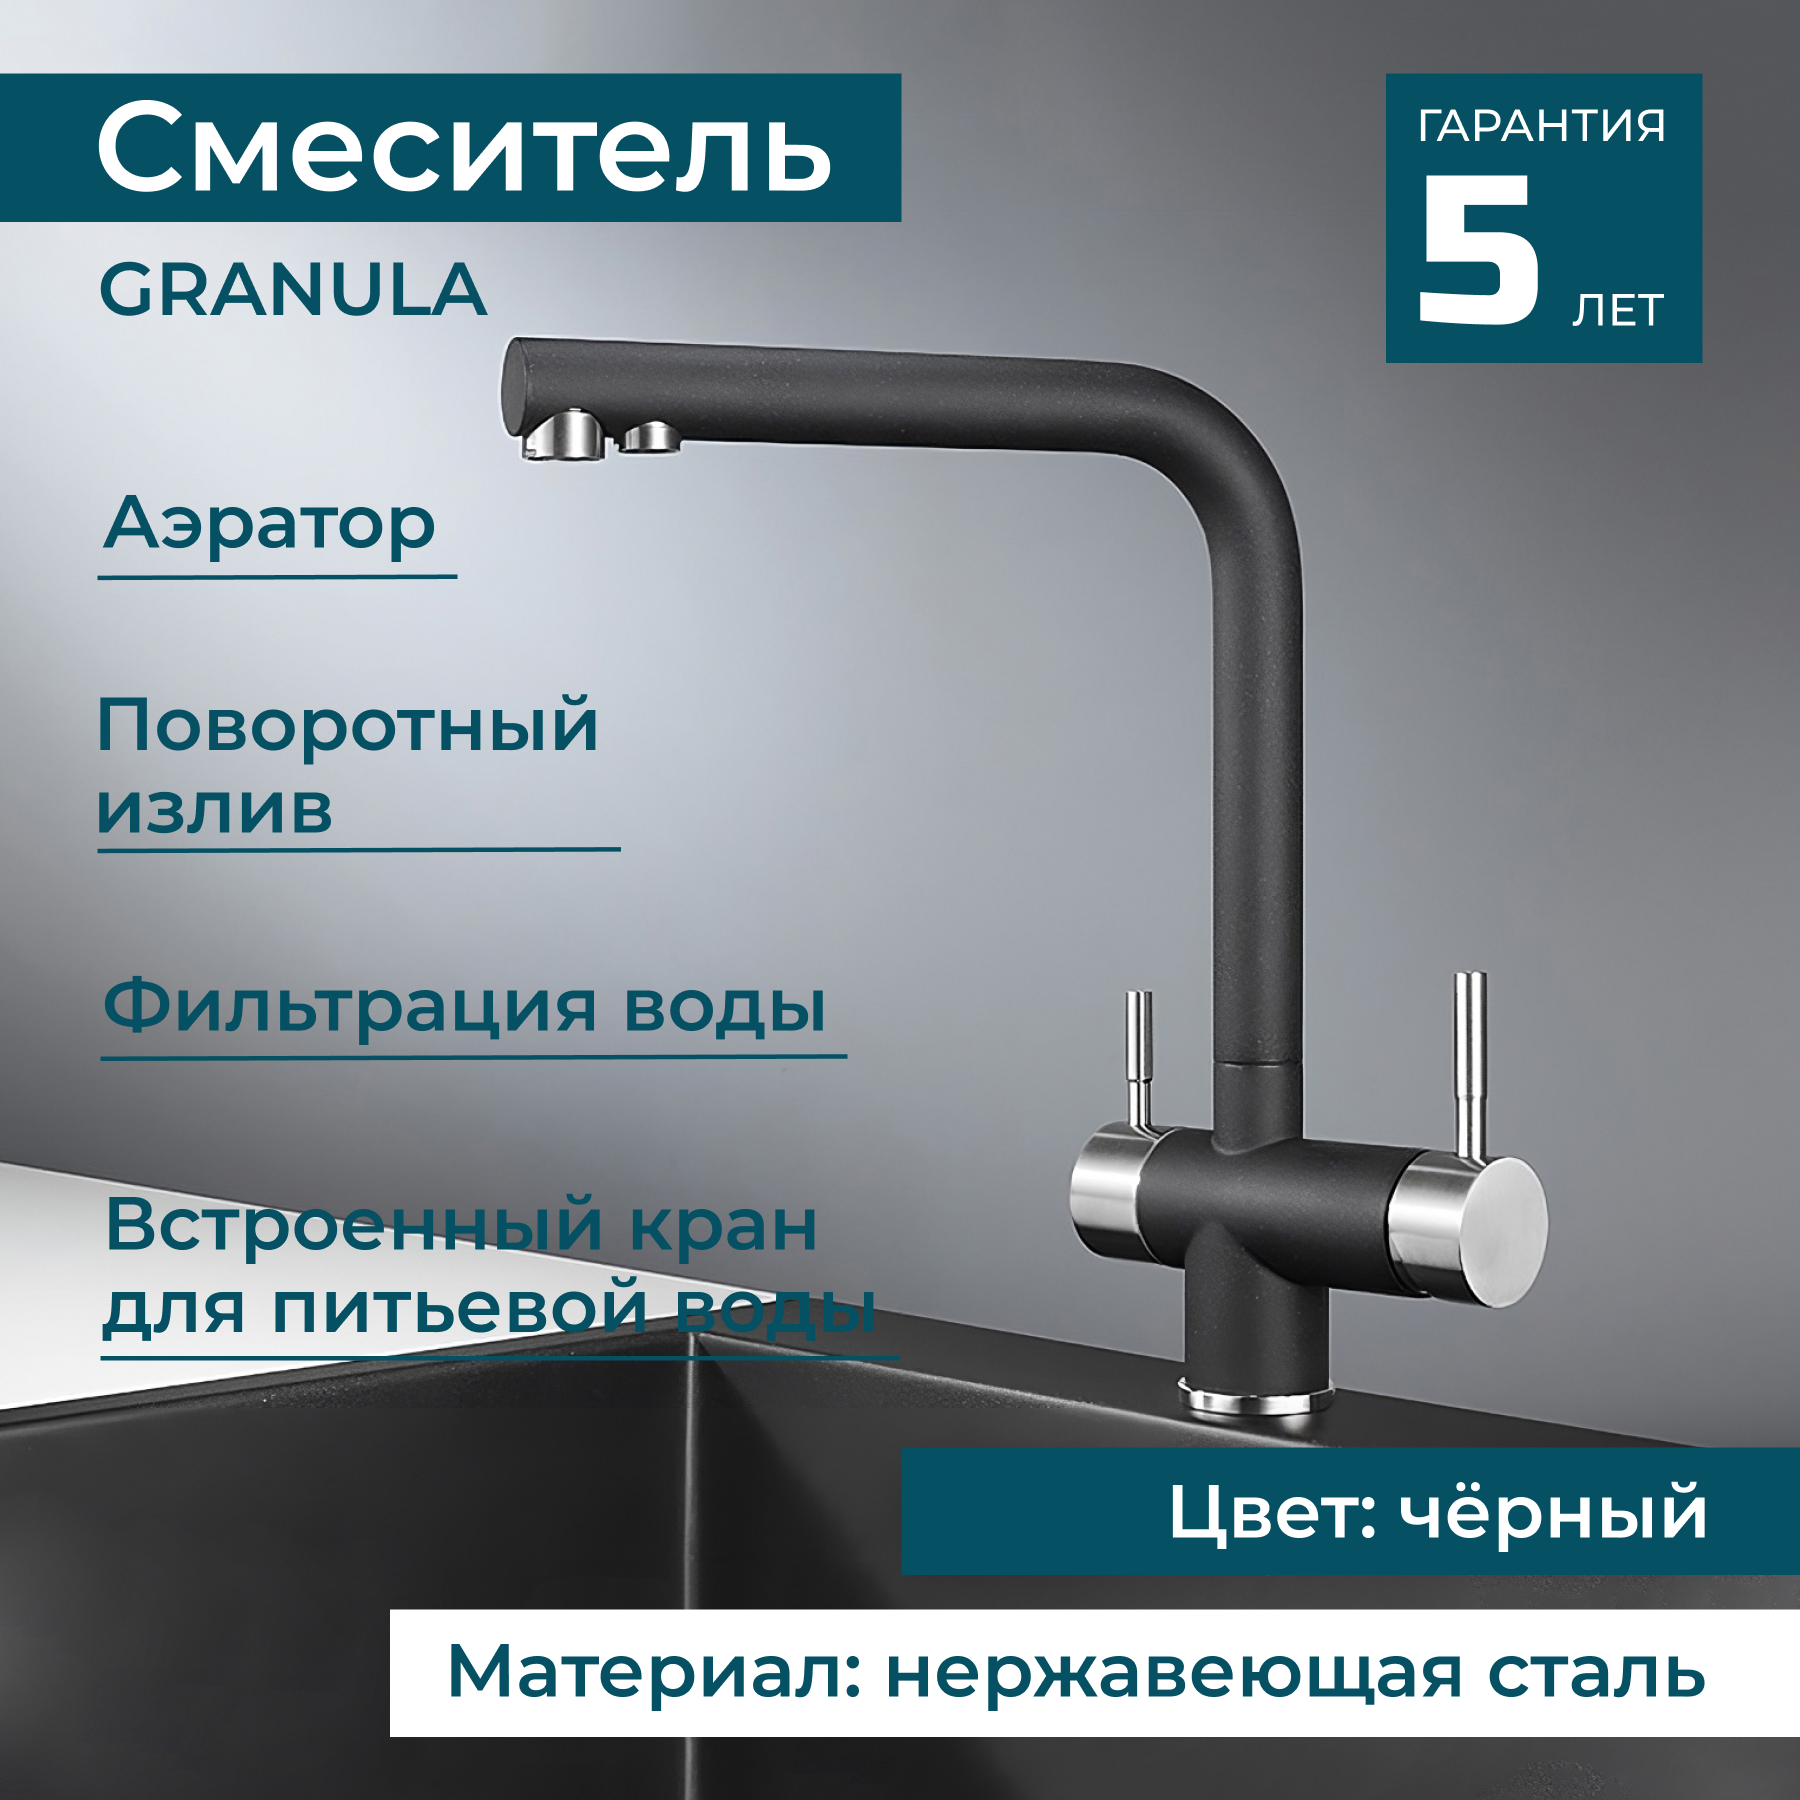 Смеситель для раковины с краном для питьевой воды GRANULA 2305 поворотный смеситель для кухни и ванной. Нержавеющая сталь. Цвет черный